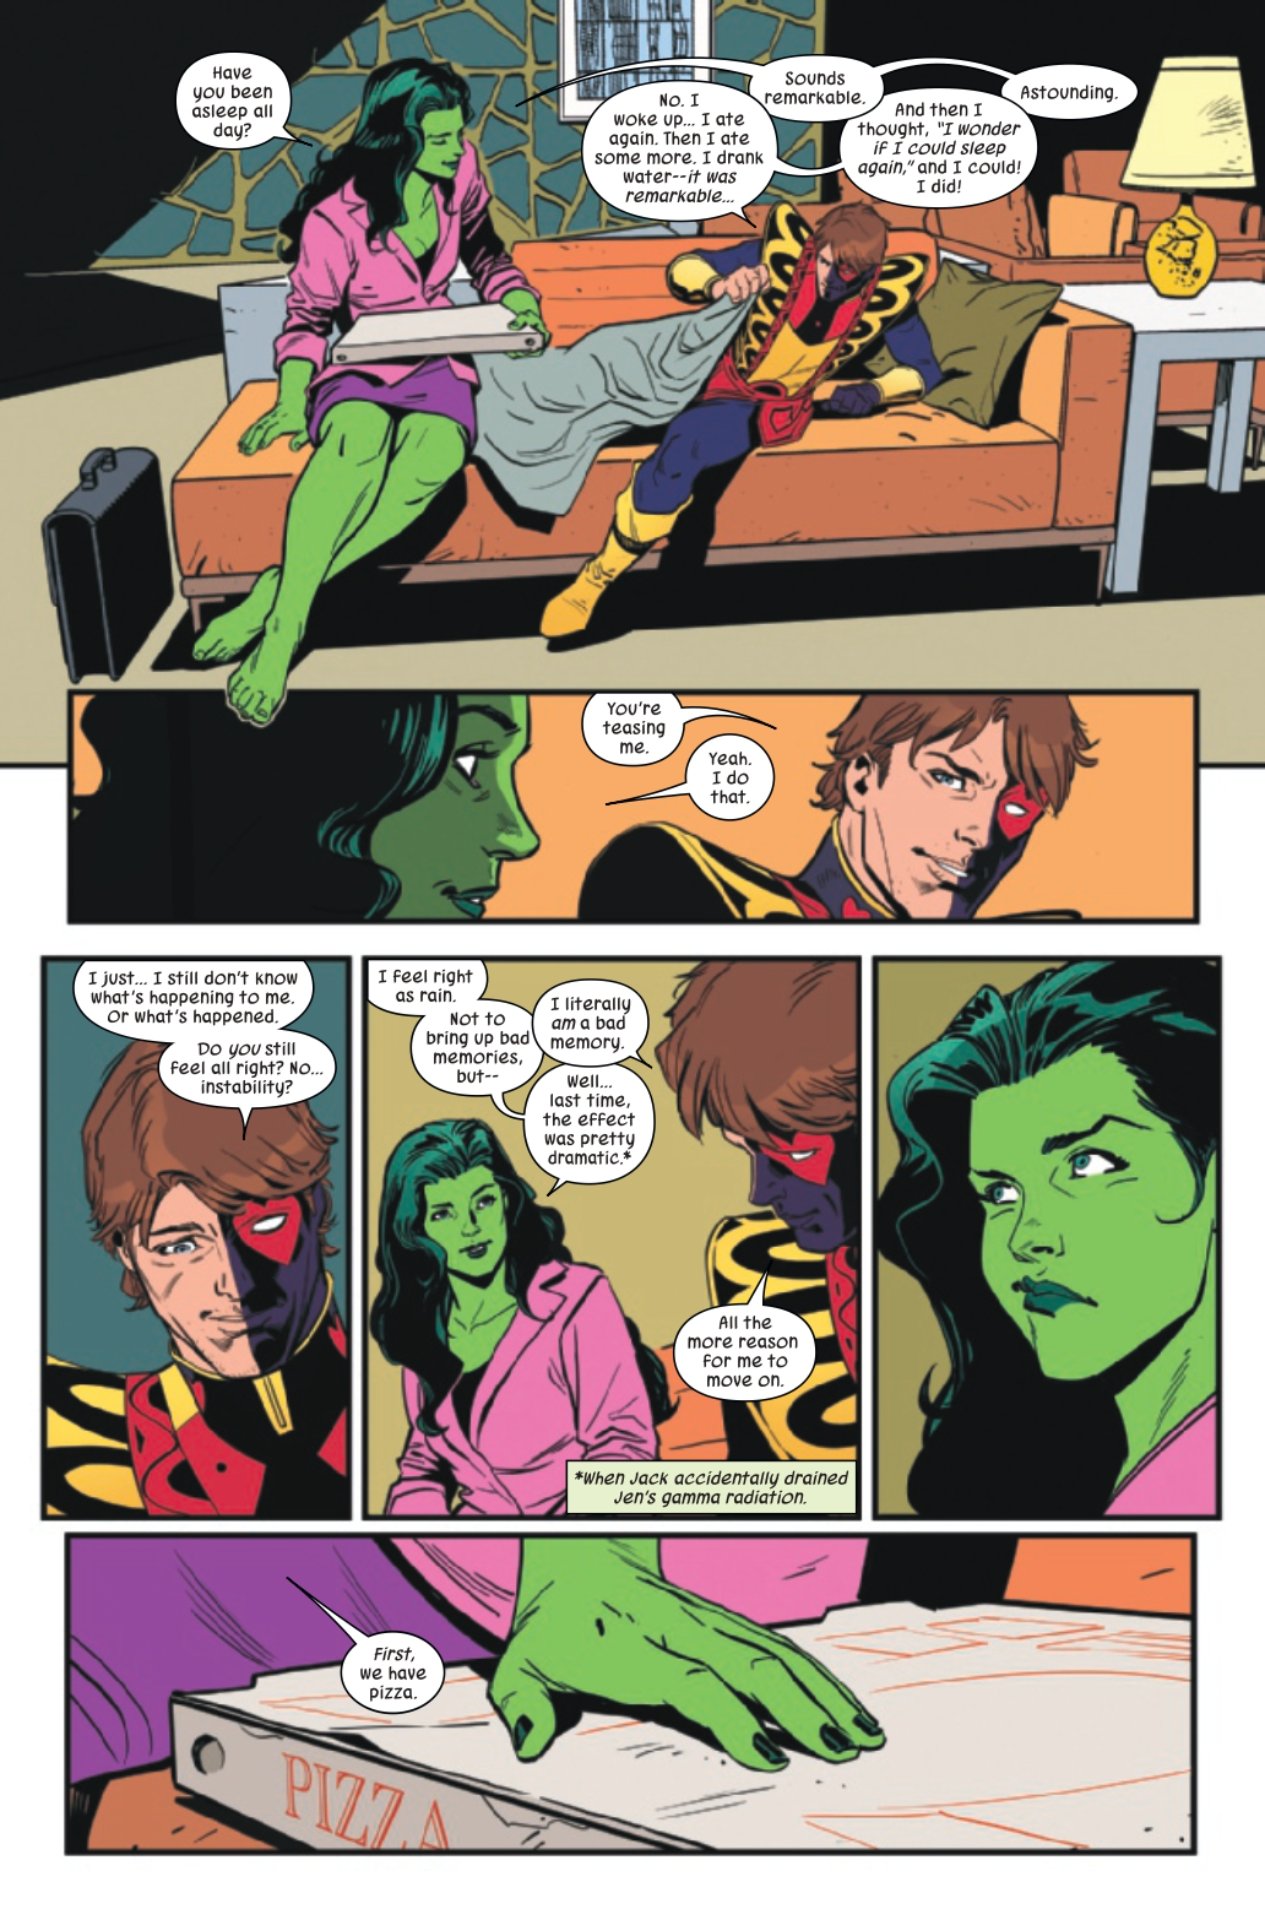 Ella-Hulk # 3